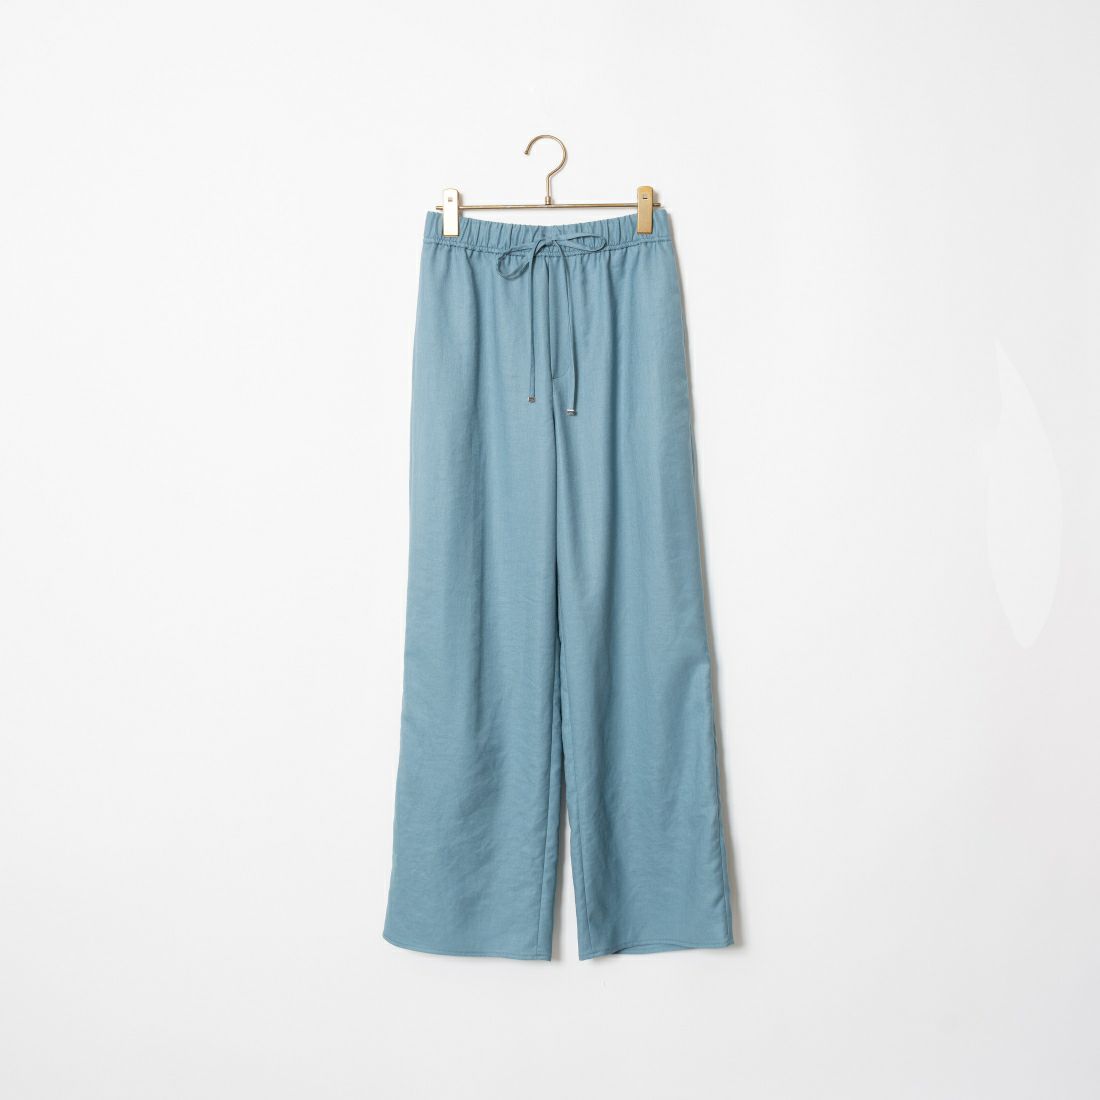 Jeans Factory Clothes [ジーンズファクトリークローズ] 杢調タンブラーツイルワイドパンツ [J-4402] 610 ﾌﾞﾙｰ